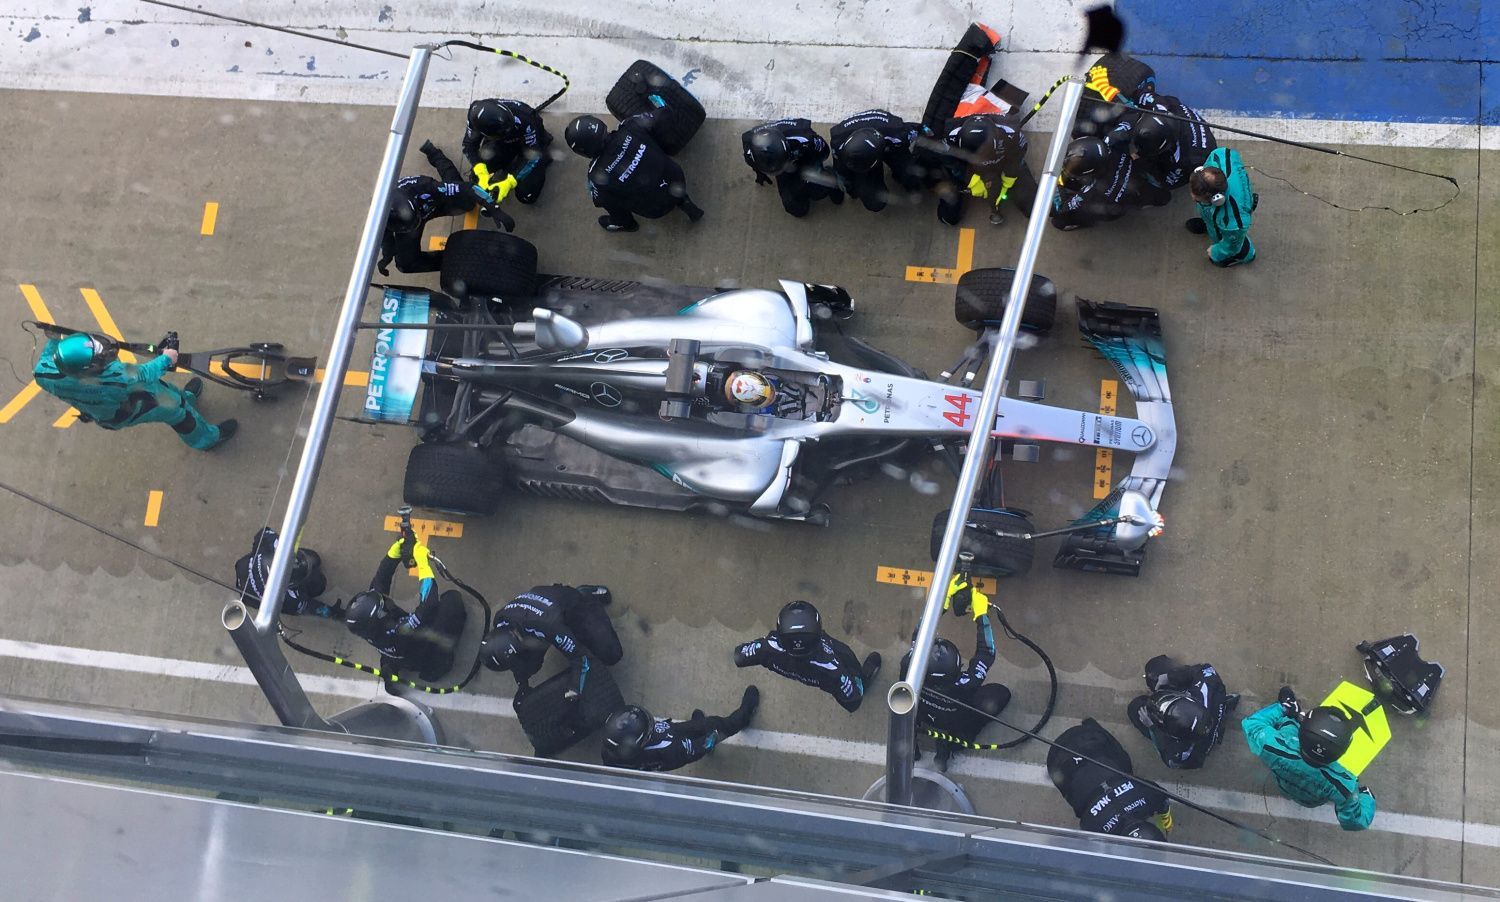 F1 2017: Mercedes W08 EQ Power+